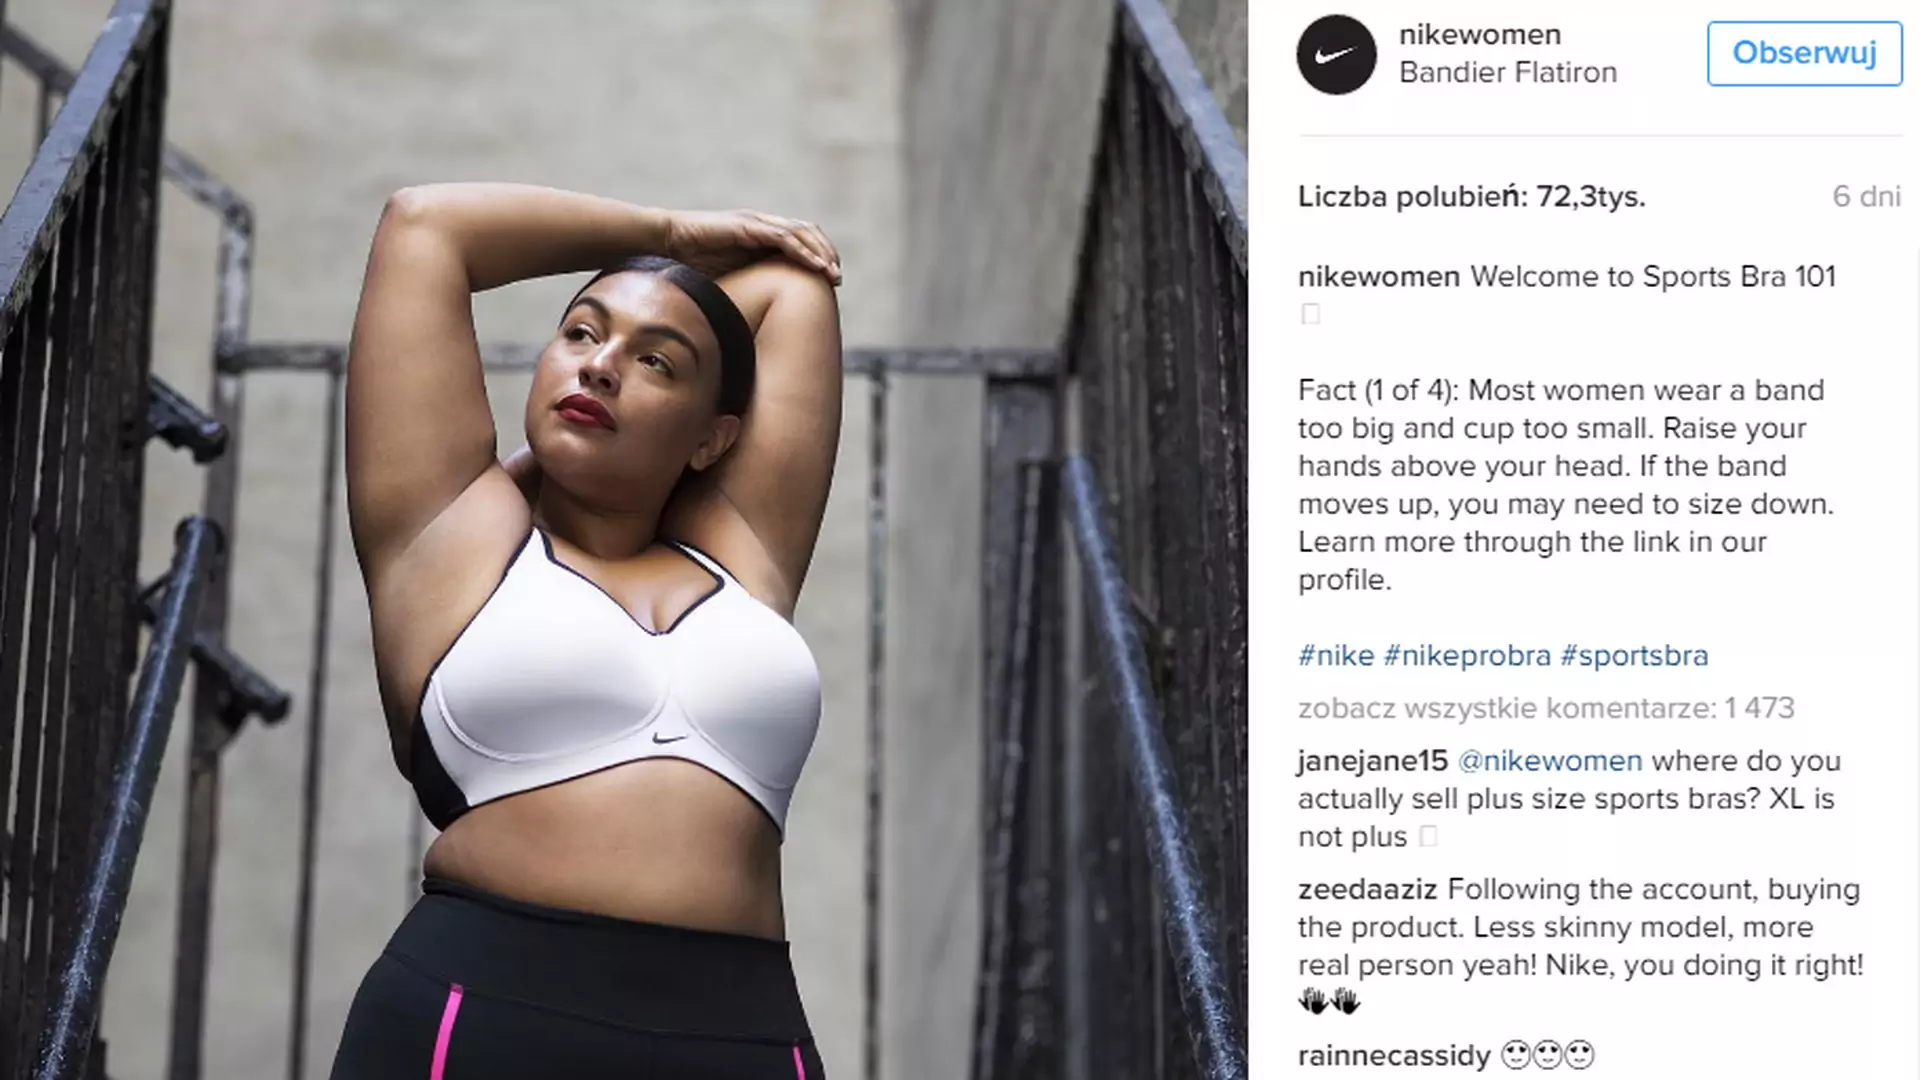 Kobiety z krągłościami w kampanii Nike. Bo nie tylko szczupli uprawiają sport